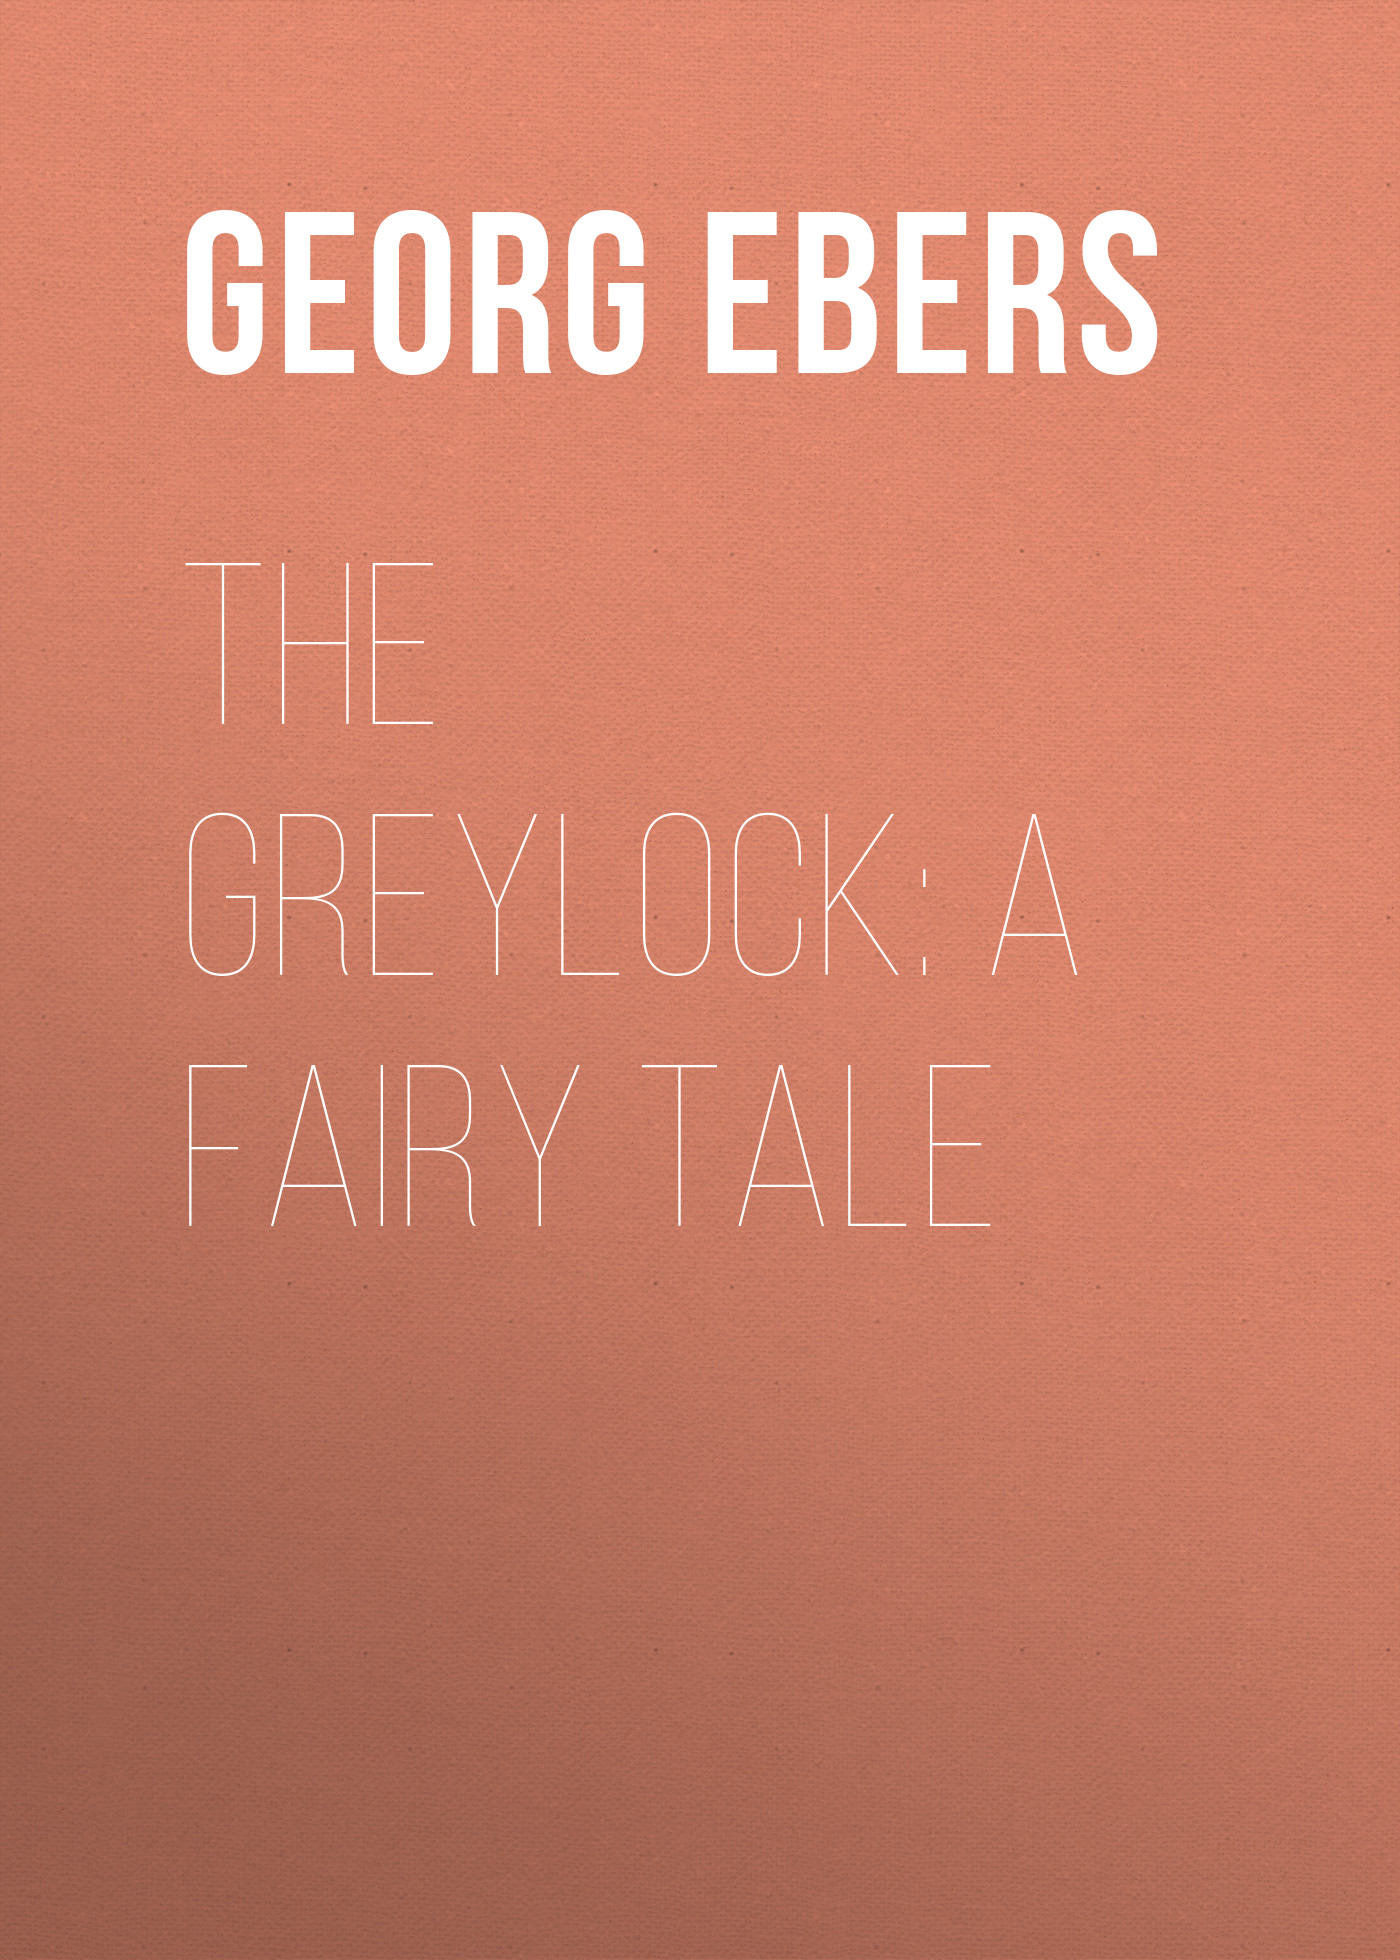 Книга The Greylock: A Fairy Tale из серии , созданная Georg Ebers, может относится к жанру Сказки, Литература 19 века, Зарубежная старинная литература. Стоимость электронной книги The Greylock: A Fairy Tale с идентификатором 42627555 составляет 0 руб.